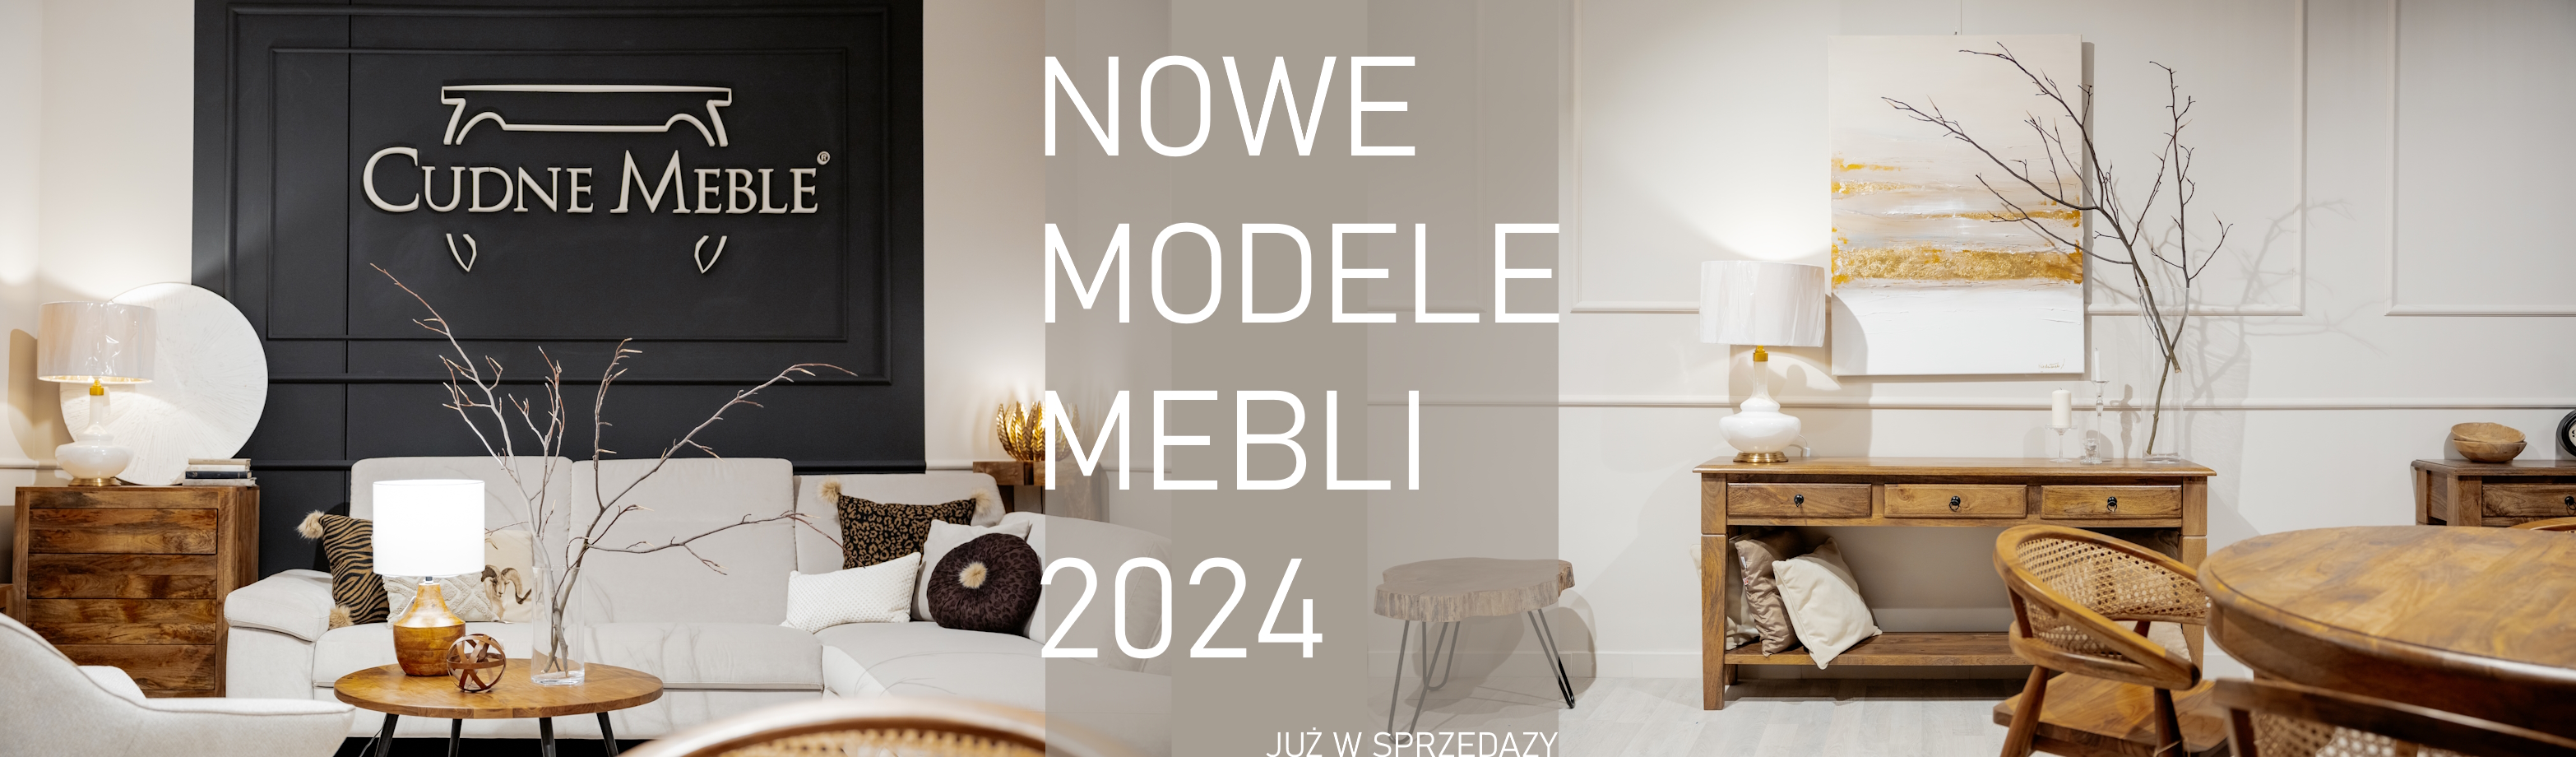 NOWE MODELE MEBLI DREWNIANY 2024 W CUDNE MEBLE